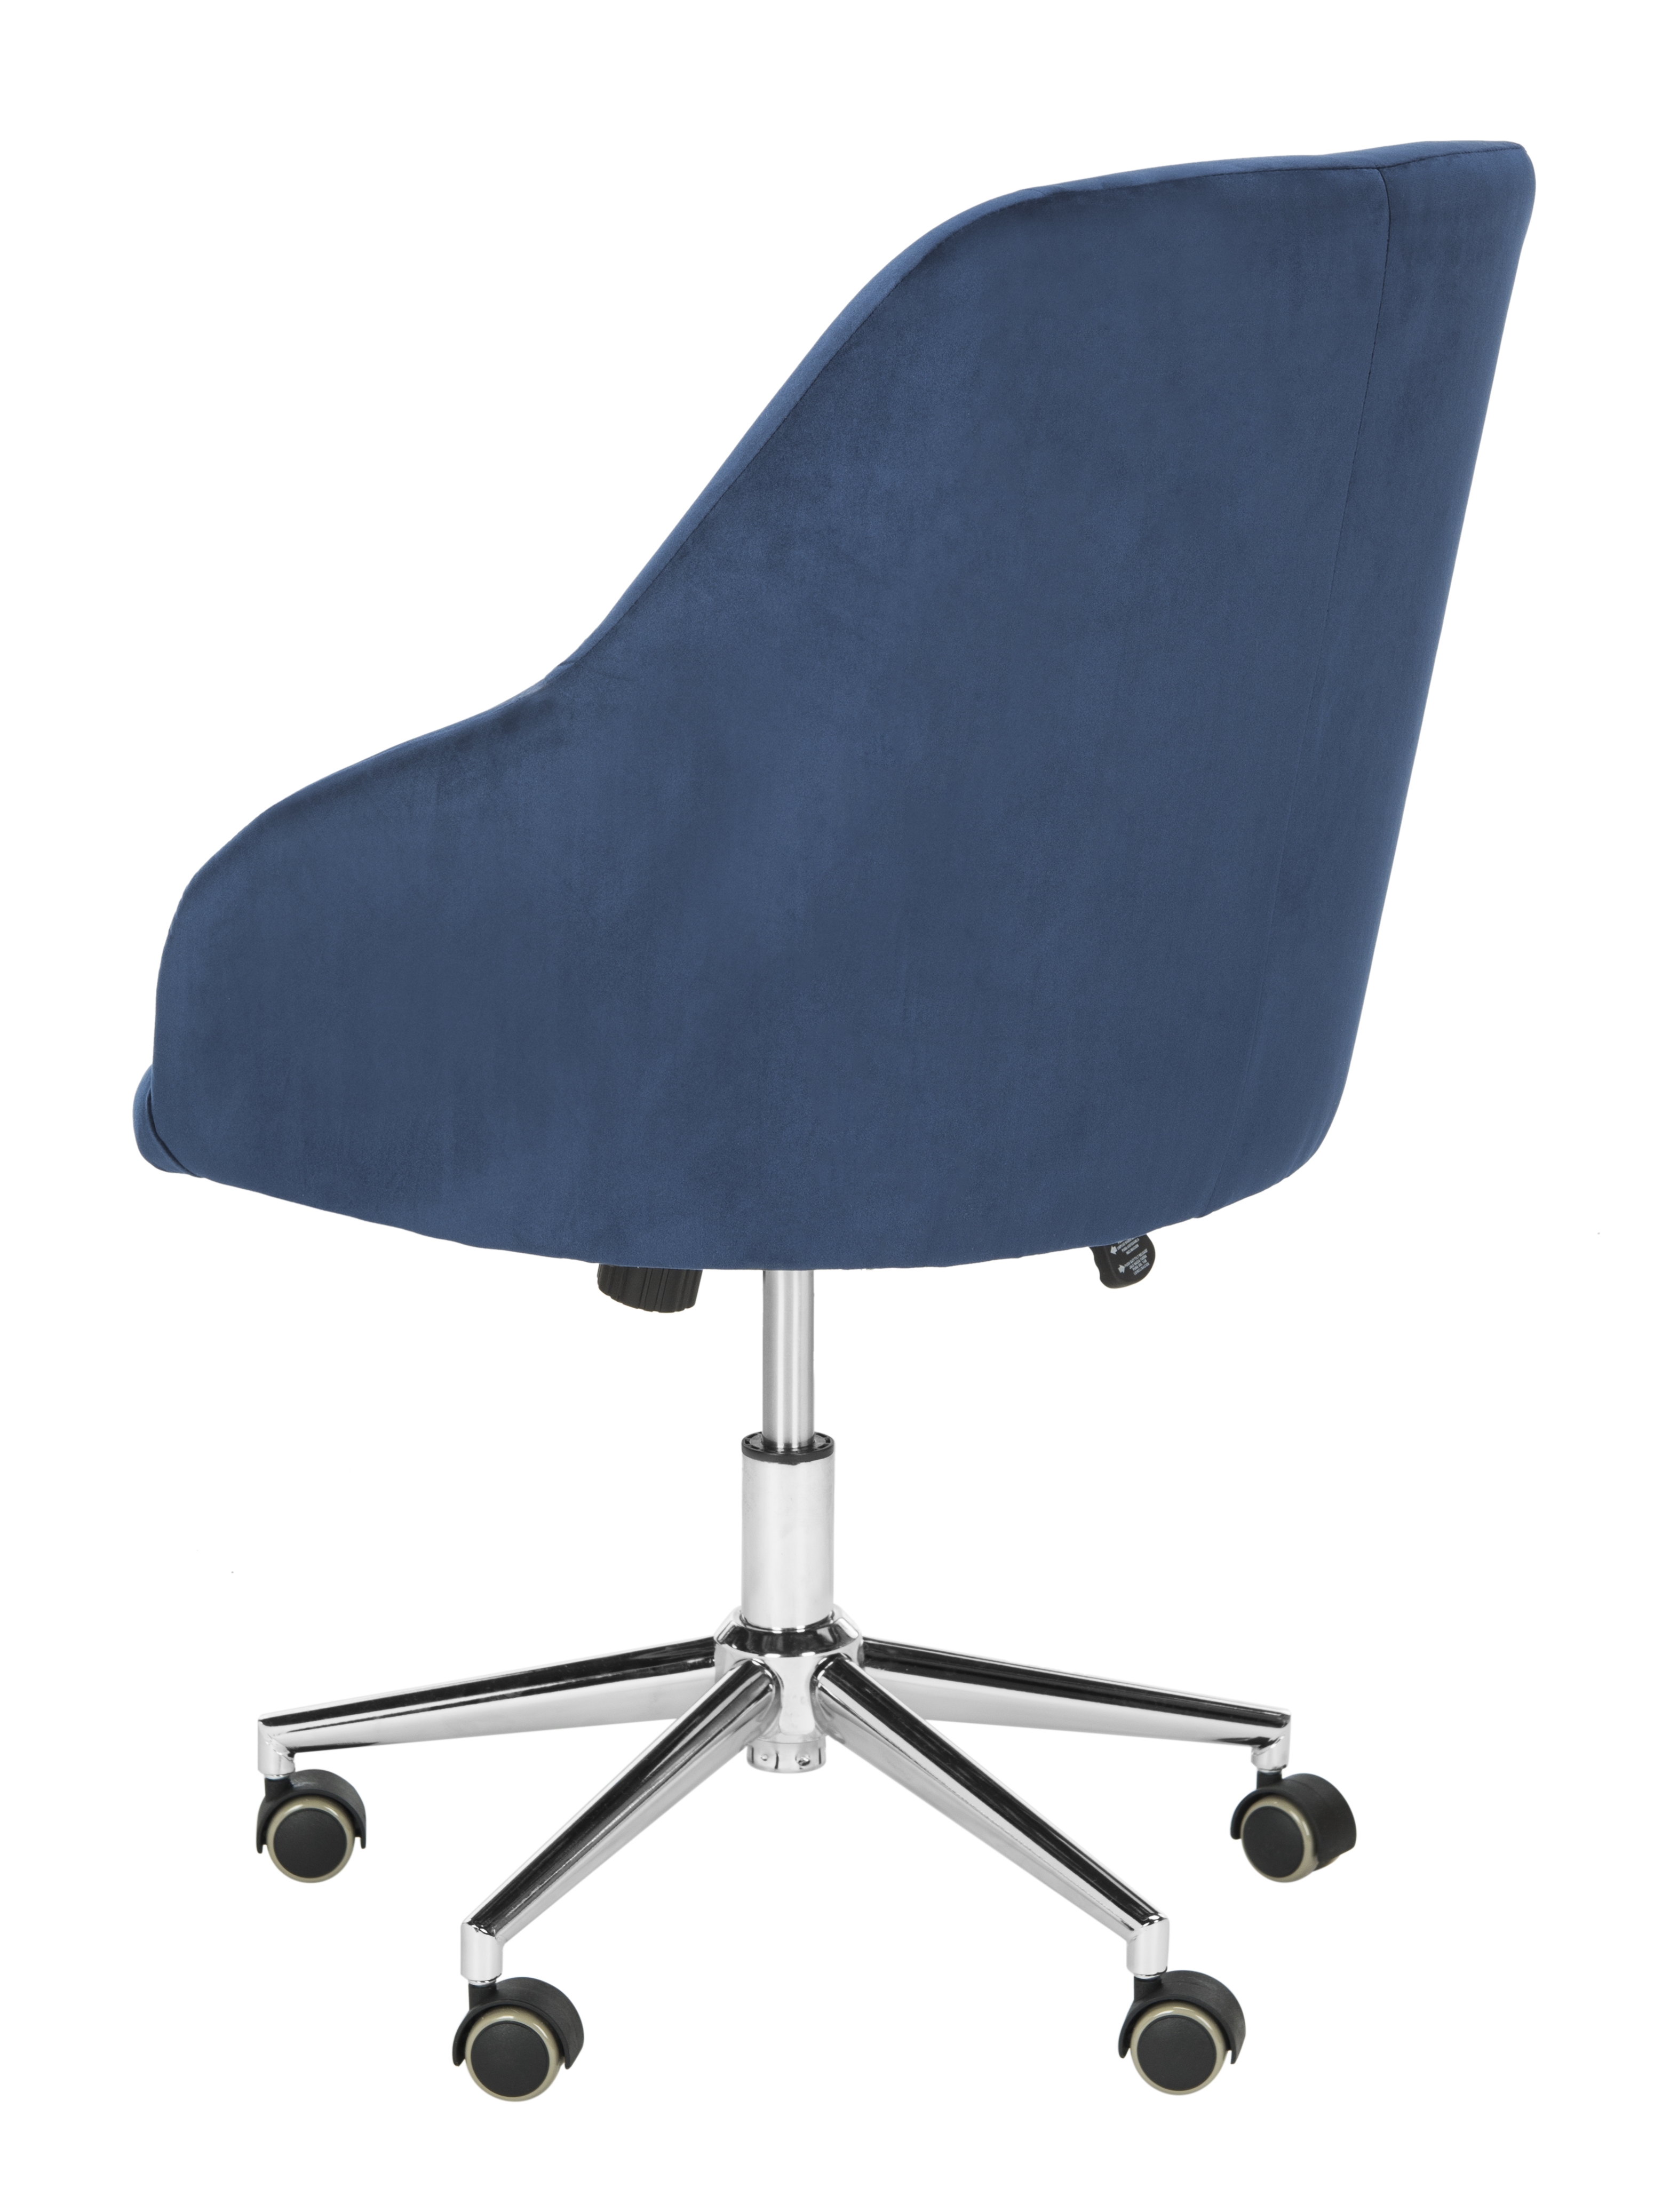 Adrienne Velvet Chrome Leg Swivel Office Chair - Navy/Chrome - Arlo Home - Image 4